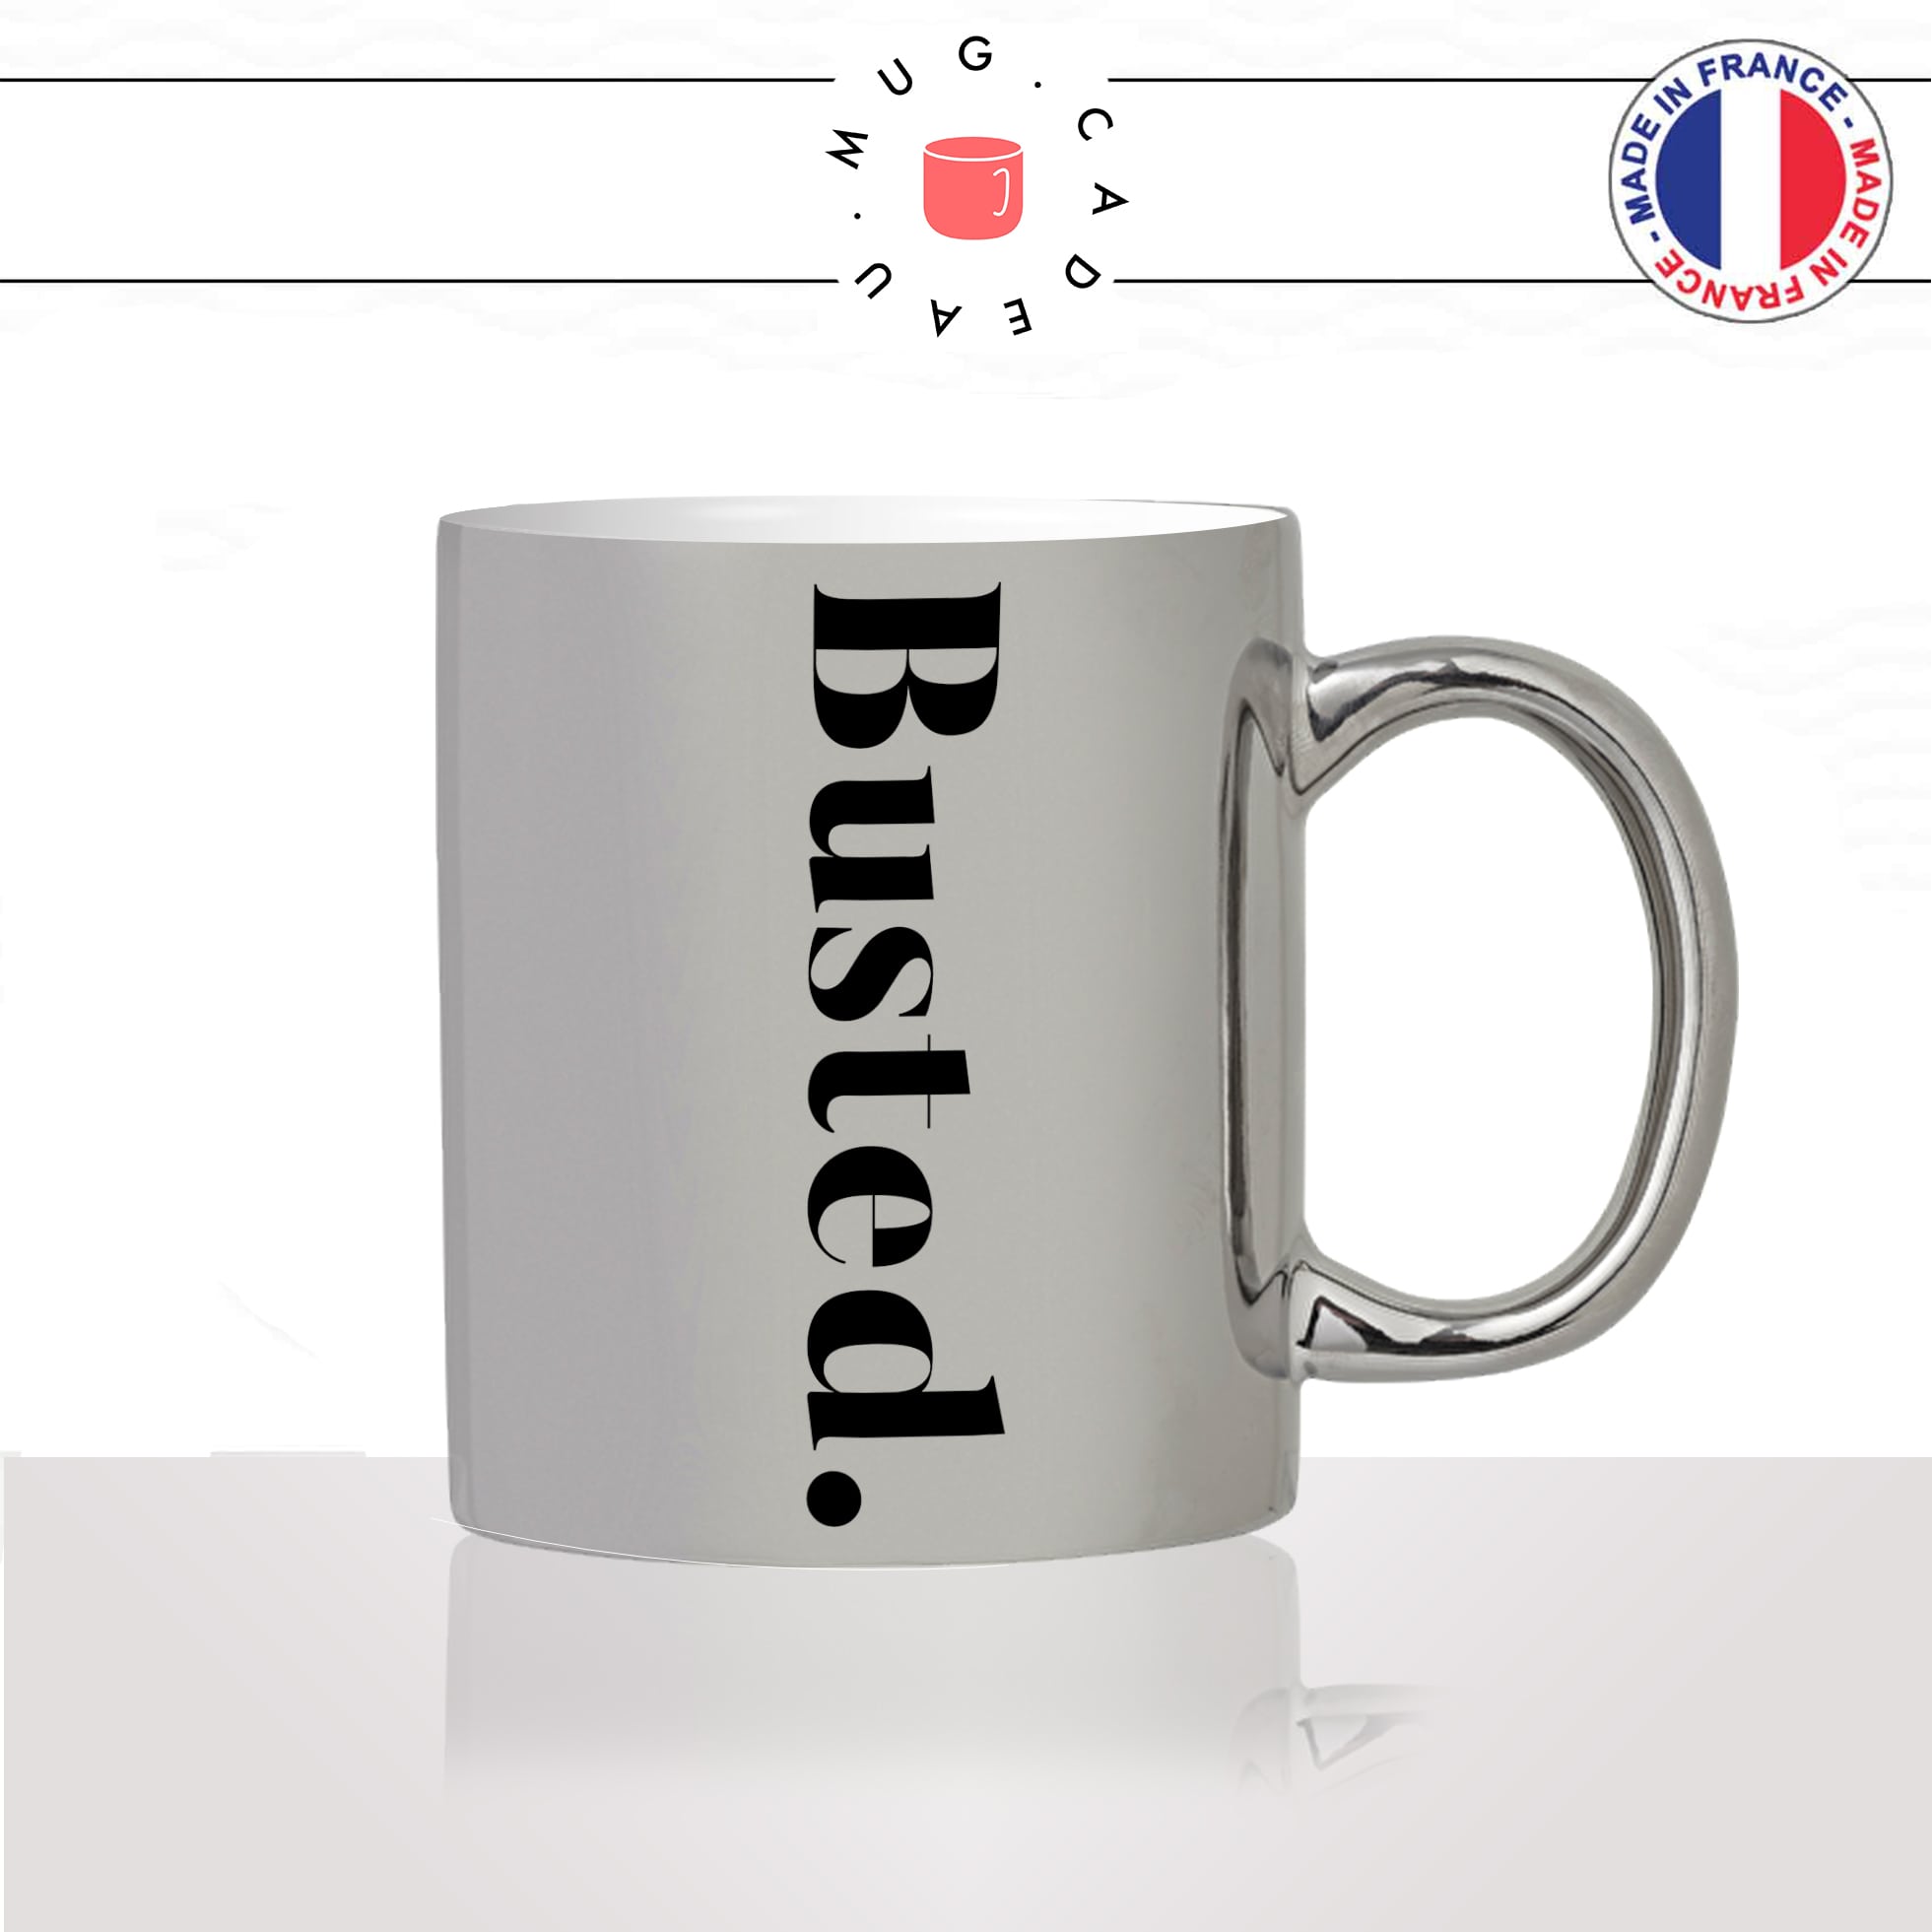 mug-tasse-silver-argenté-busted-calligraphie-lettrine-mot-pris-sur-le-fait-anglais-décoration-ami-idée-cadeau-originale-personnalisé-café-thé2-min